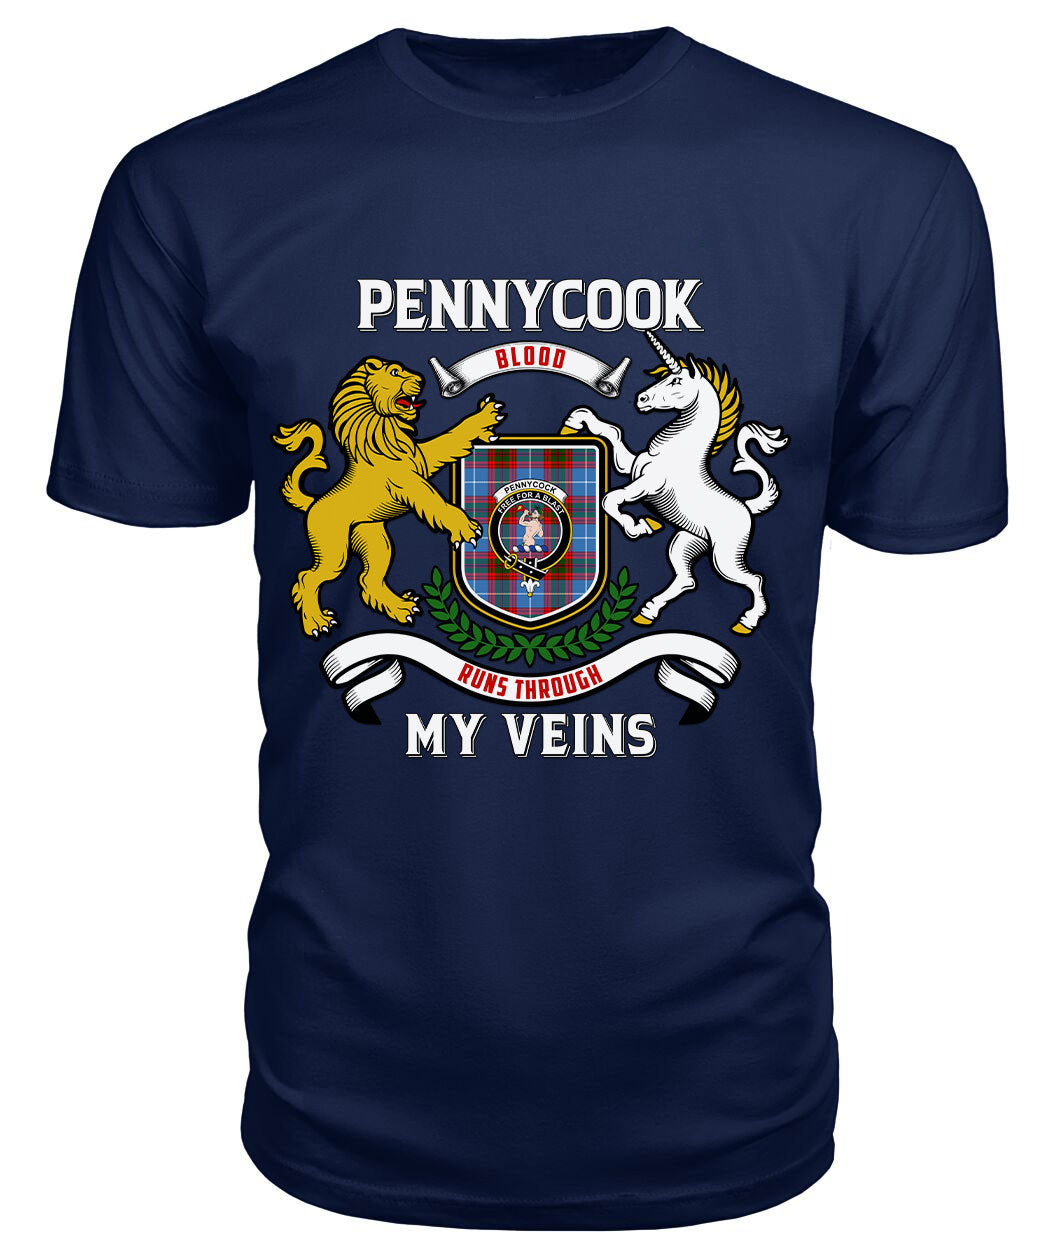 Pennycook Tartan Crest 2D T-shirt - Blood Runs Through My Veins Style